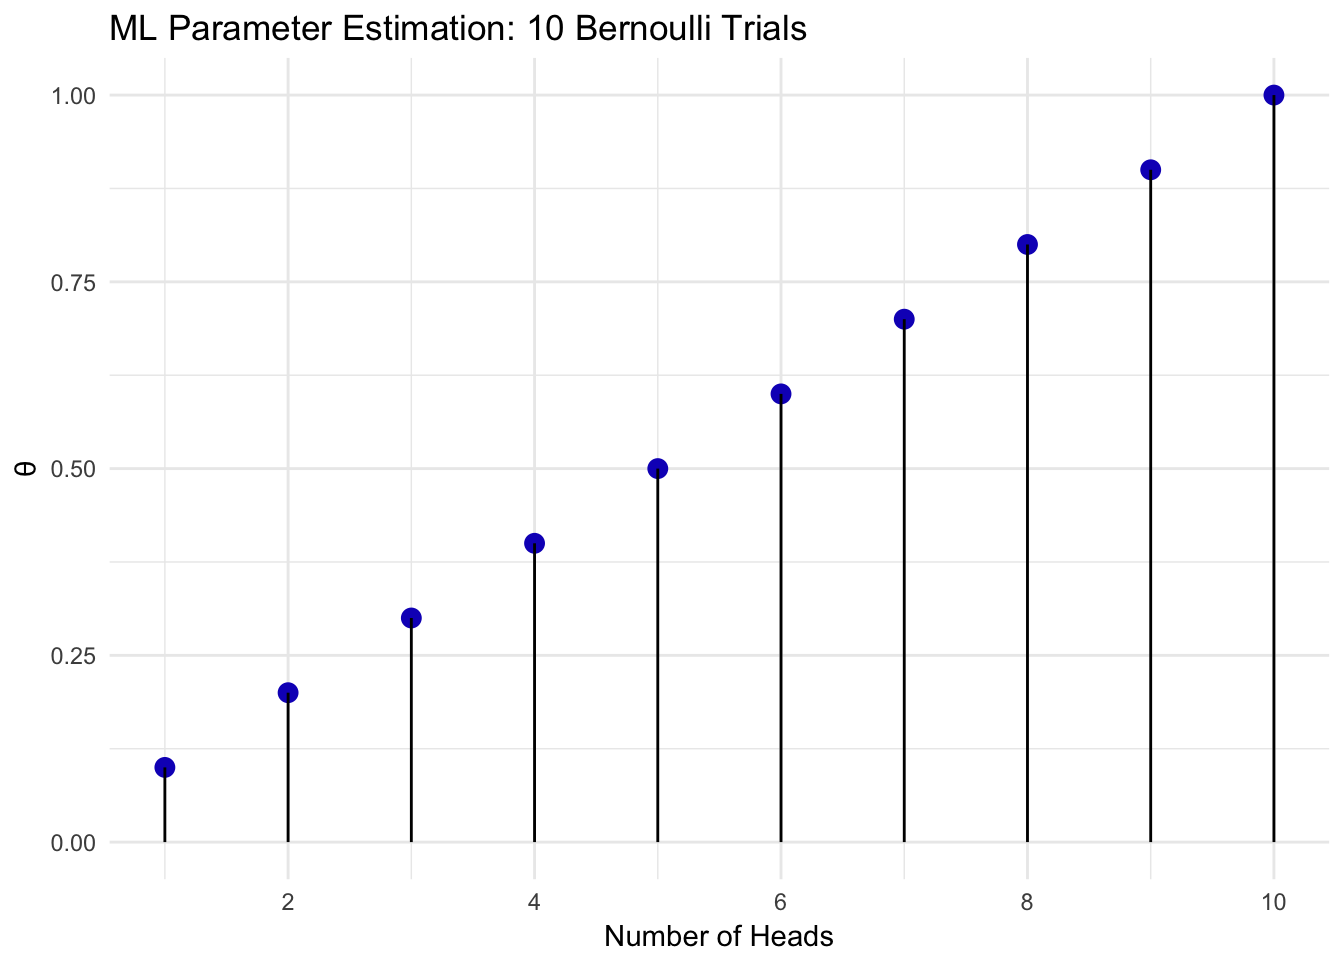 Bernoulli Maximum Likelihood